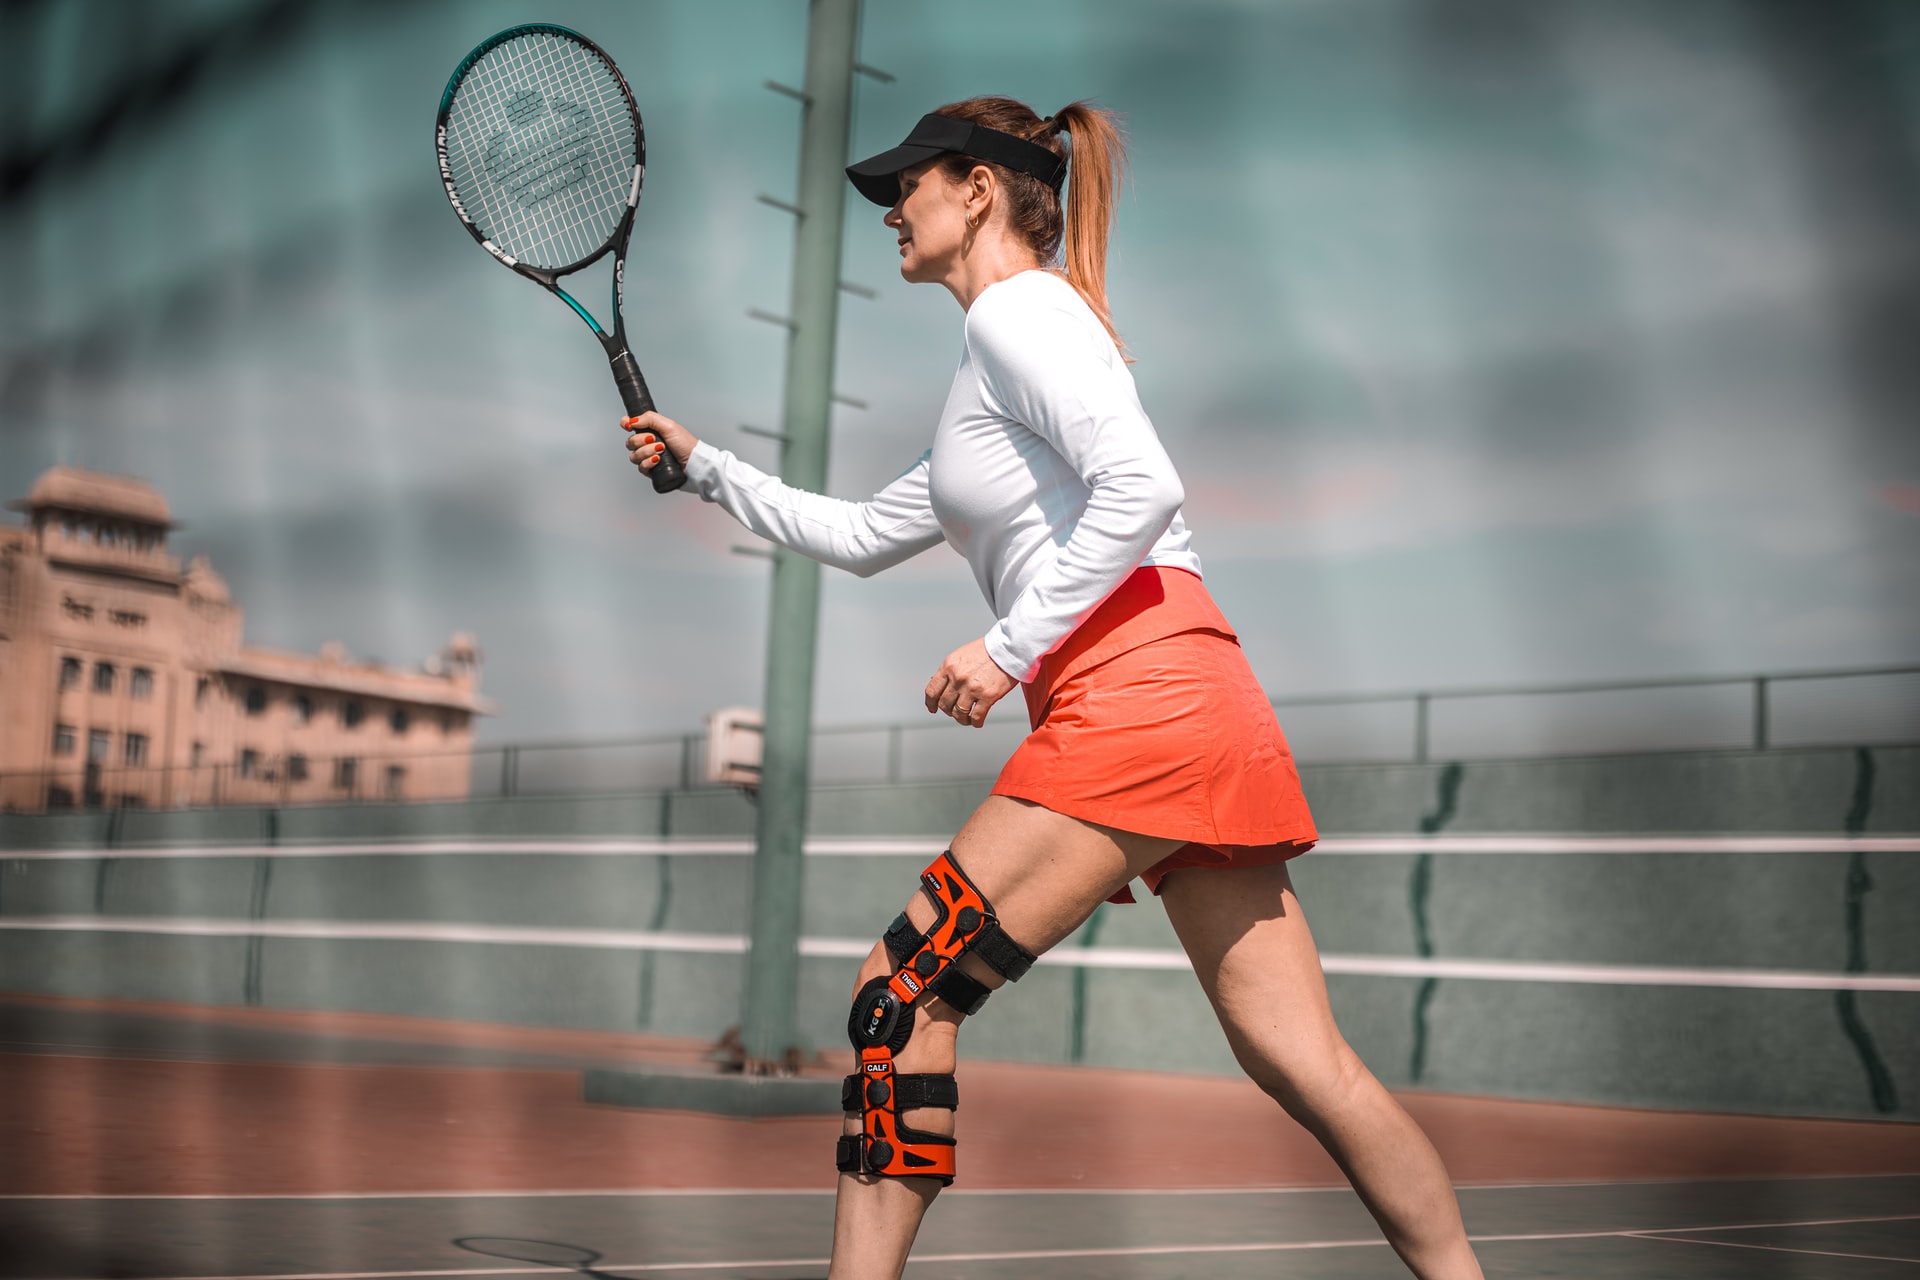 Vrouw die tennis speelt met knie brace